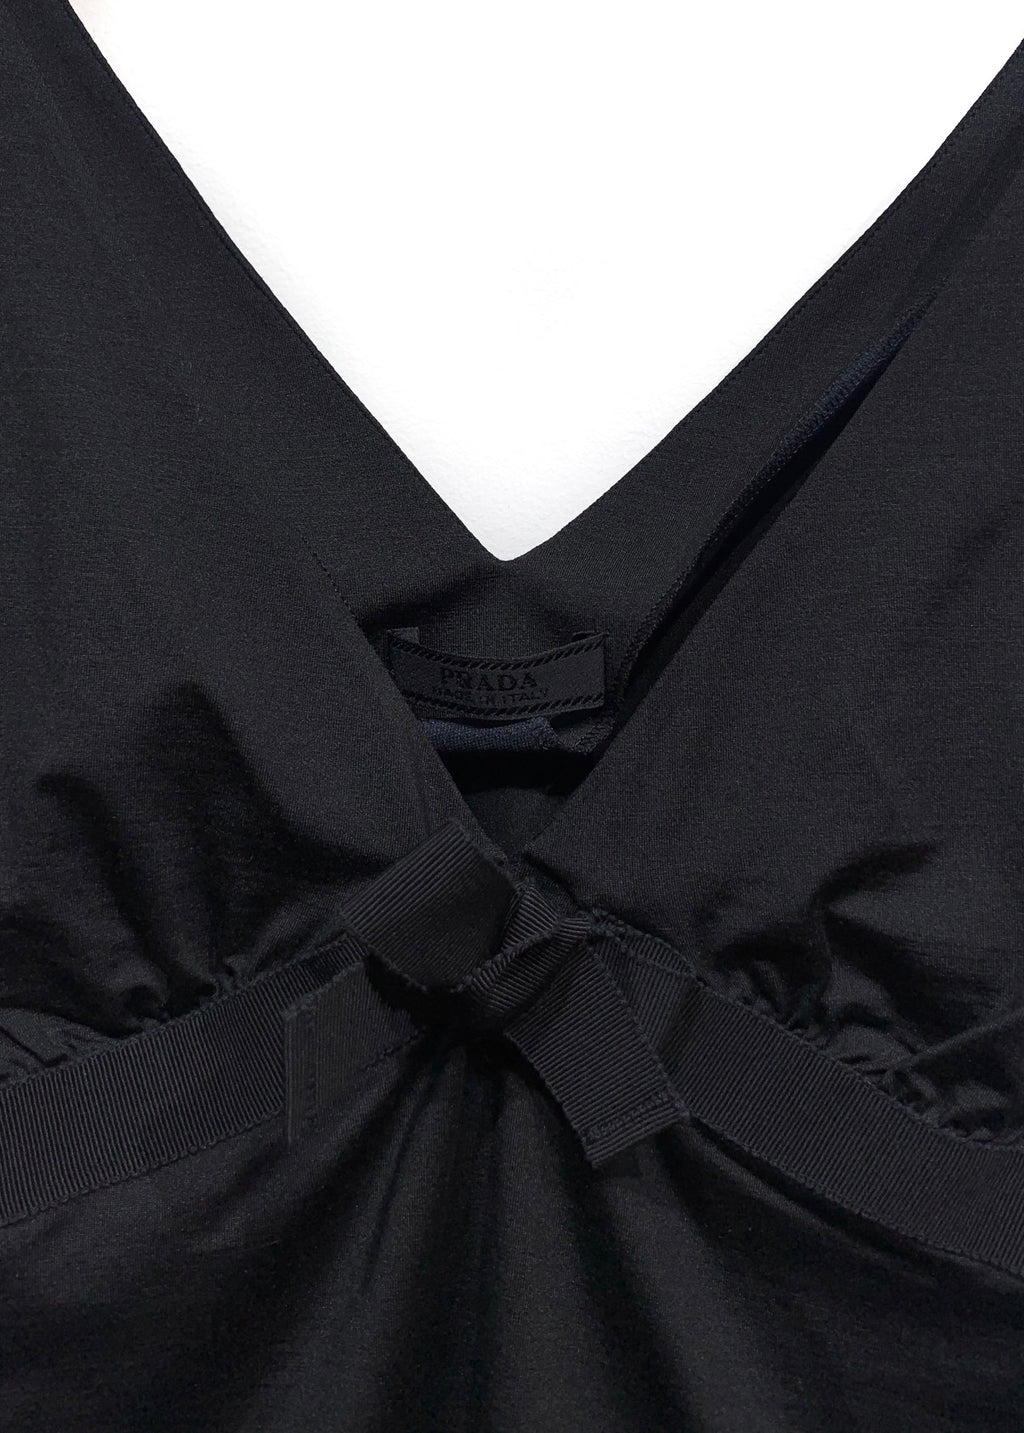 Camisole noire en soie Prada avec nœud